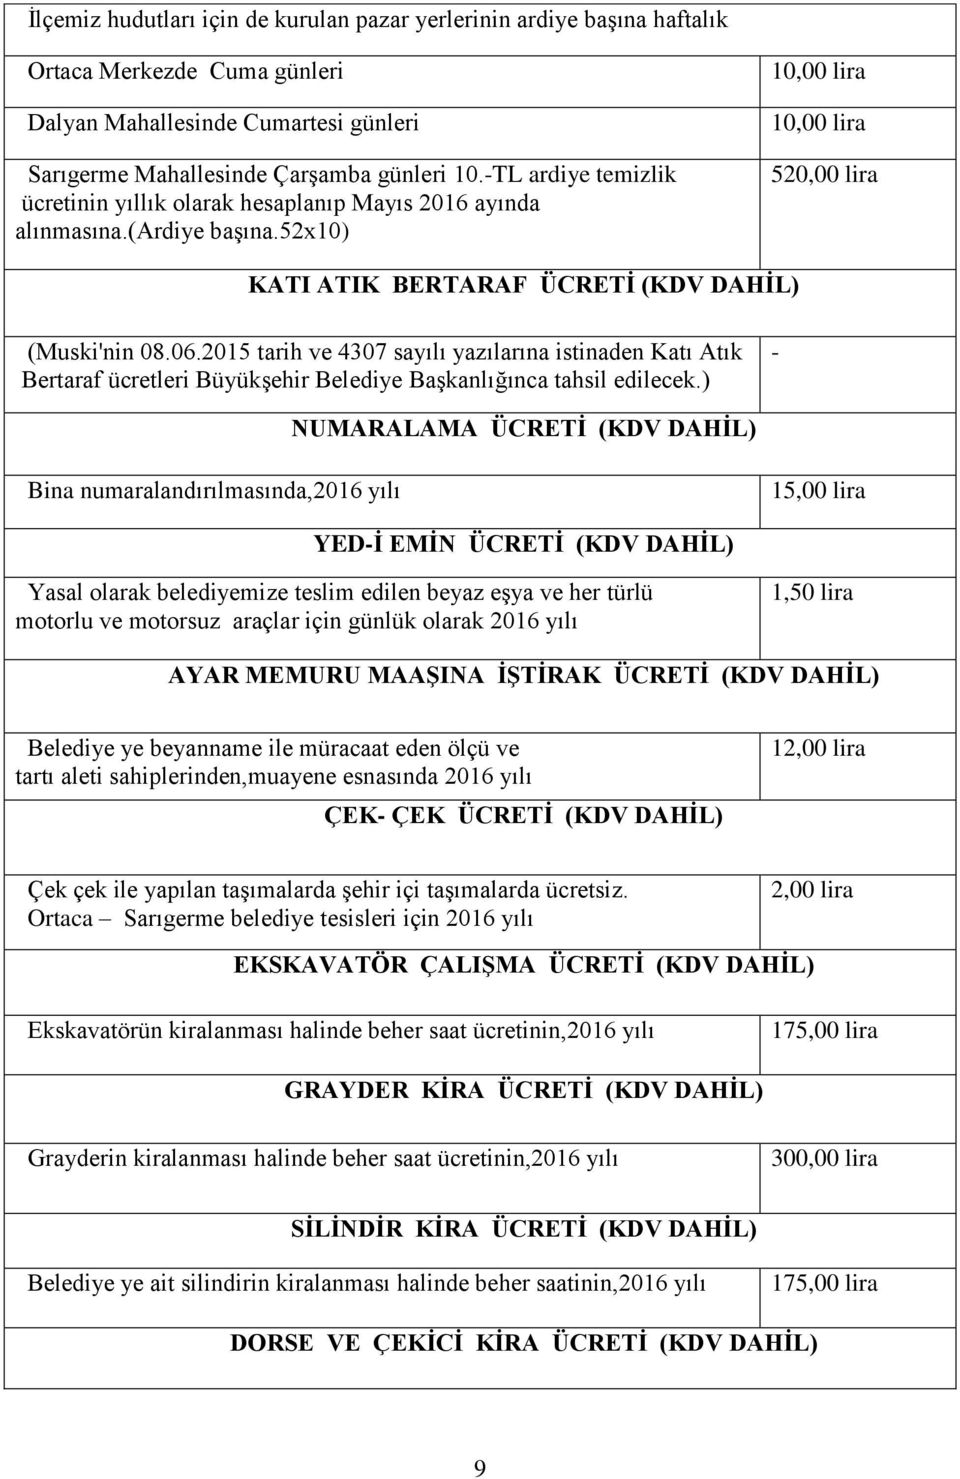 2015 tarih ve 4307 sayılı yazılarına istinaden Katı Atık Bertaraf ücretleri Büyükşehir Belediye Başkanlığınca tahsil edilecek.